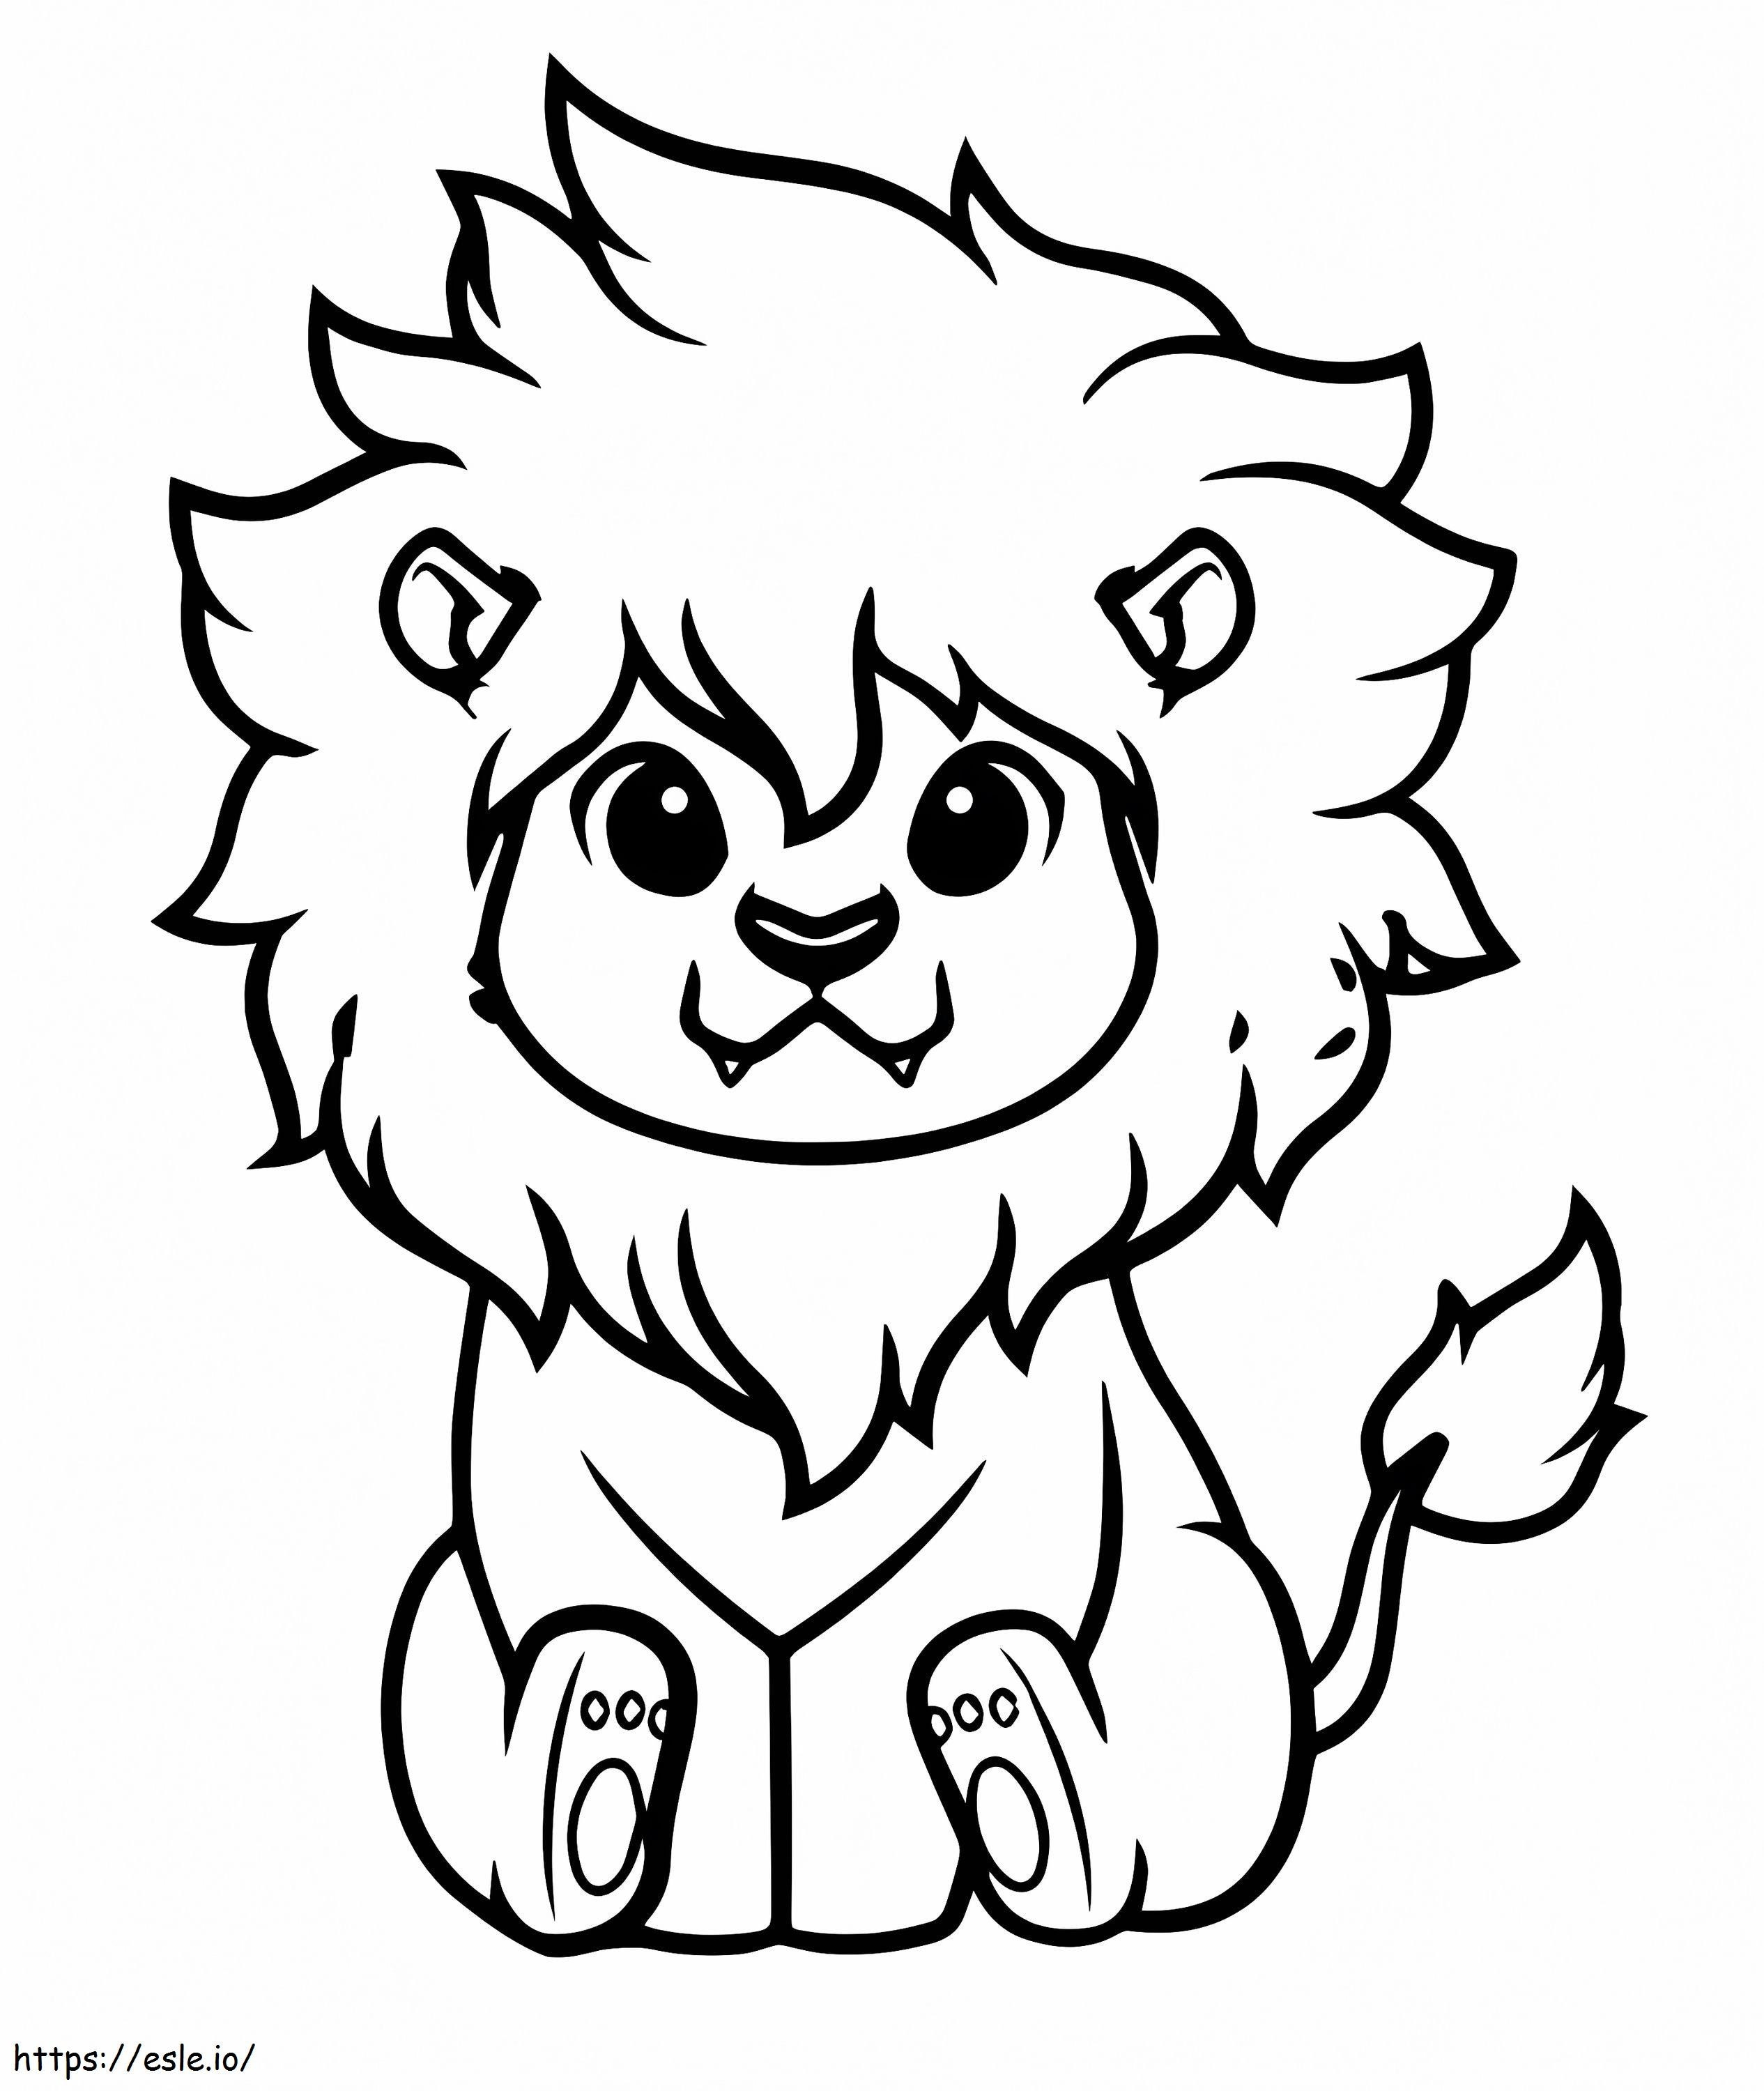 Little Lion coloring page